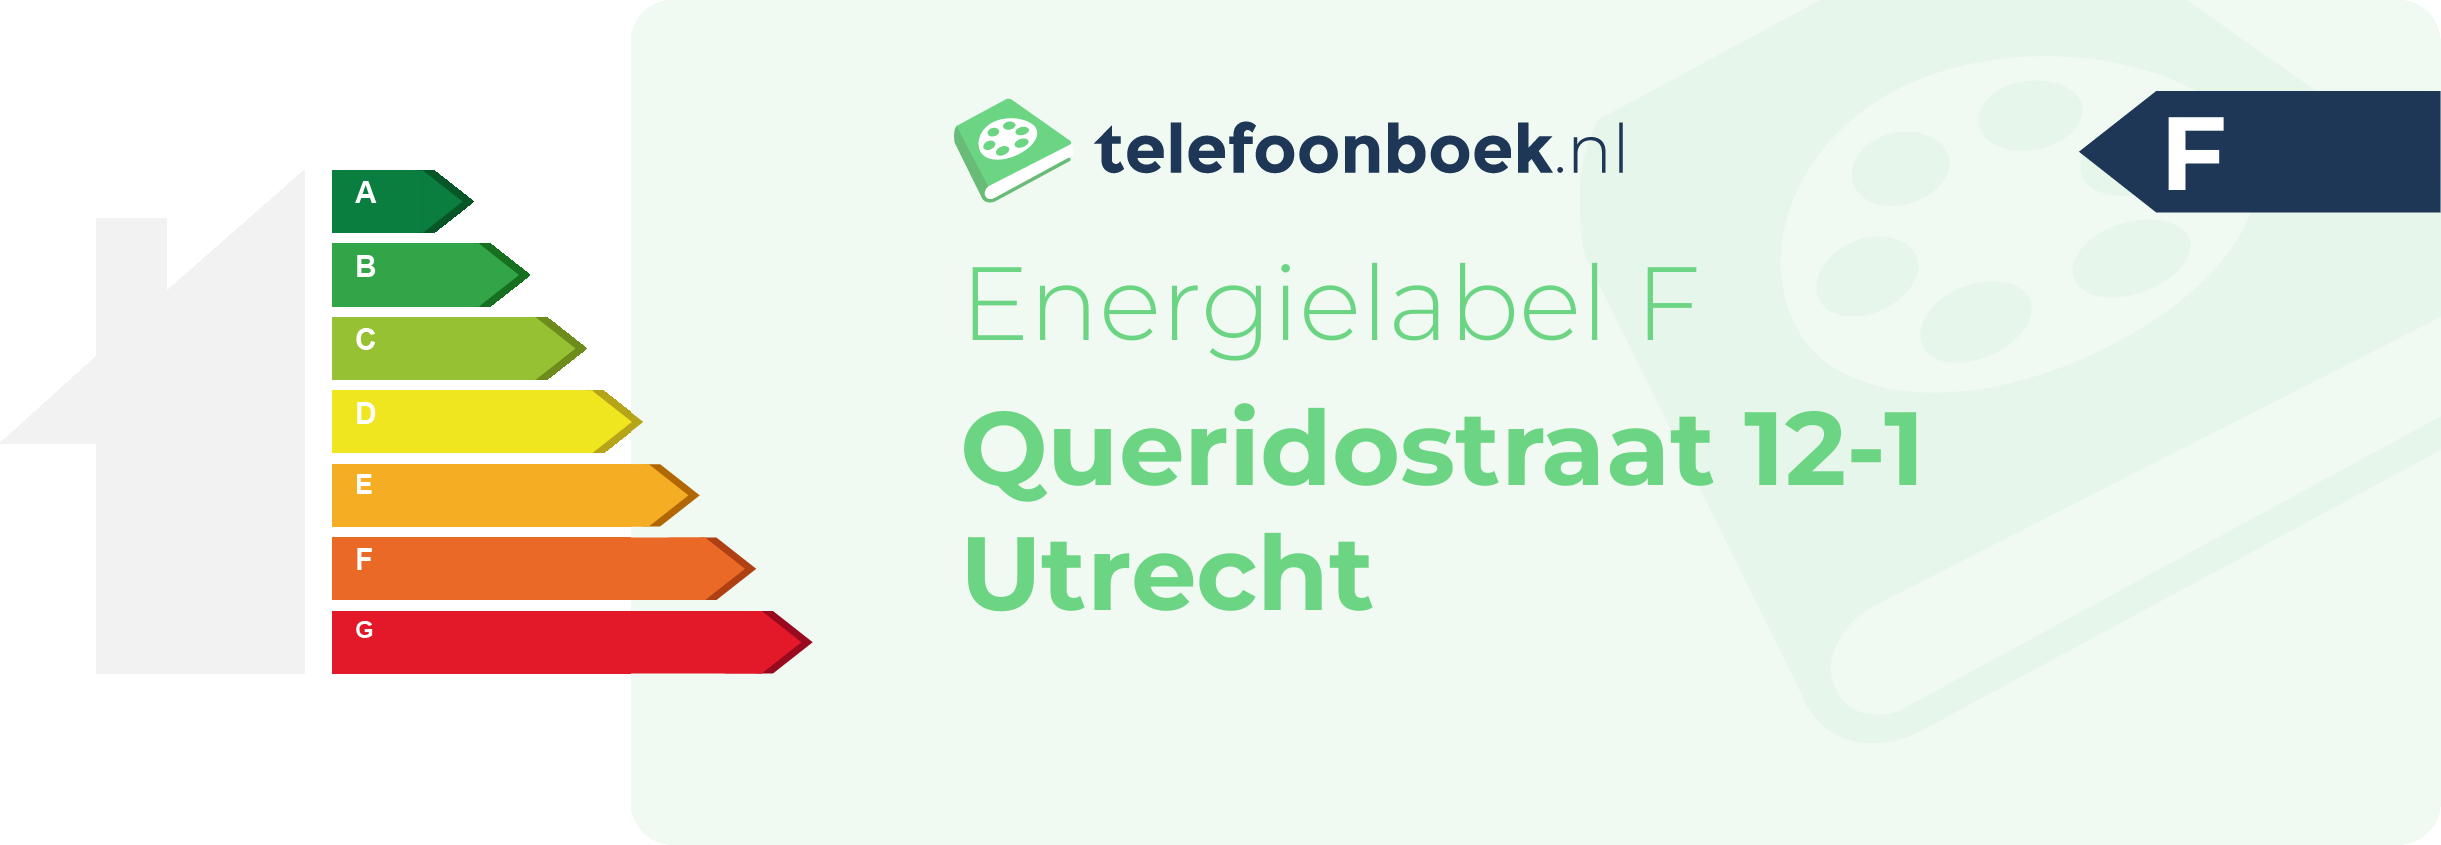 Energielabel Queridostraat 12-1 Utrecht